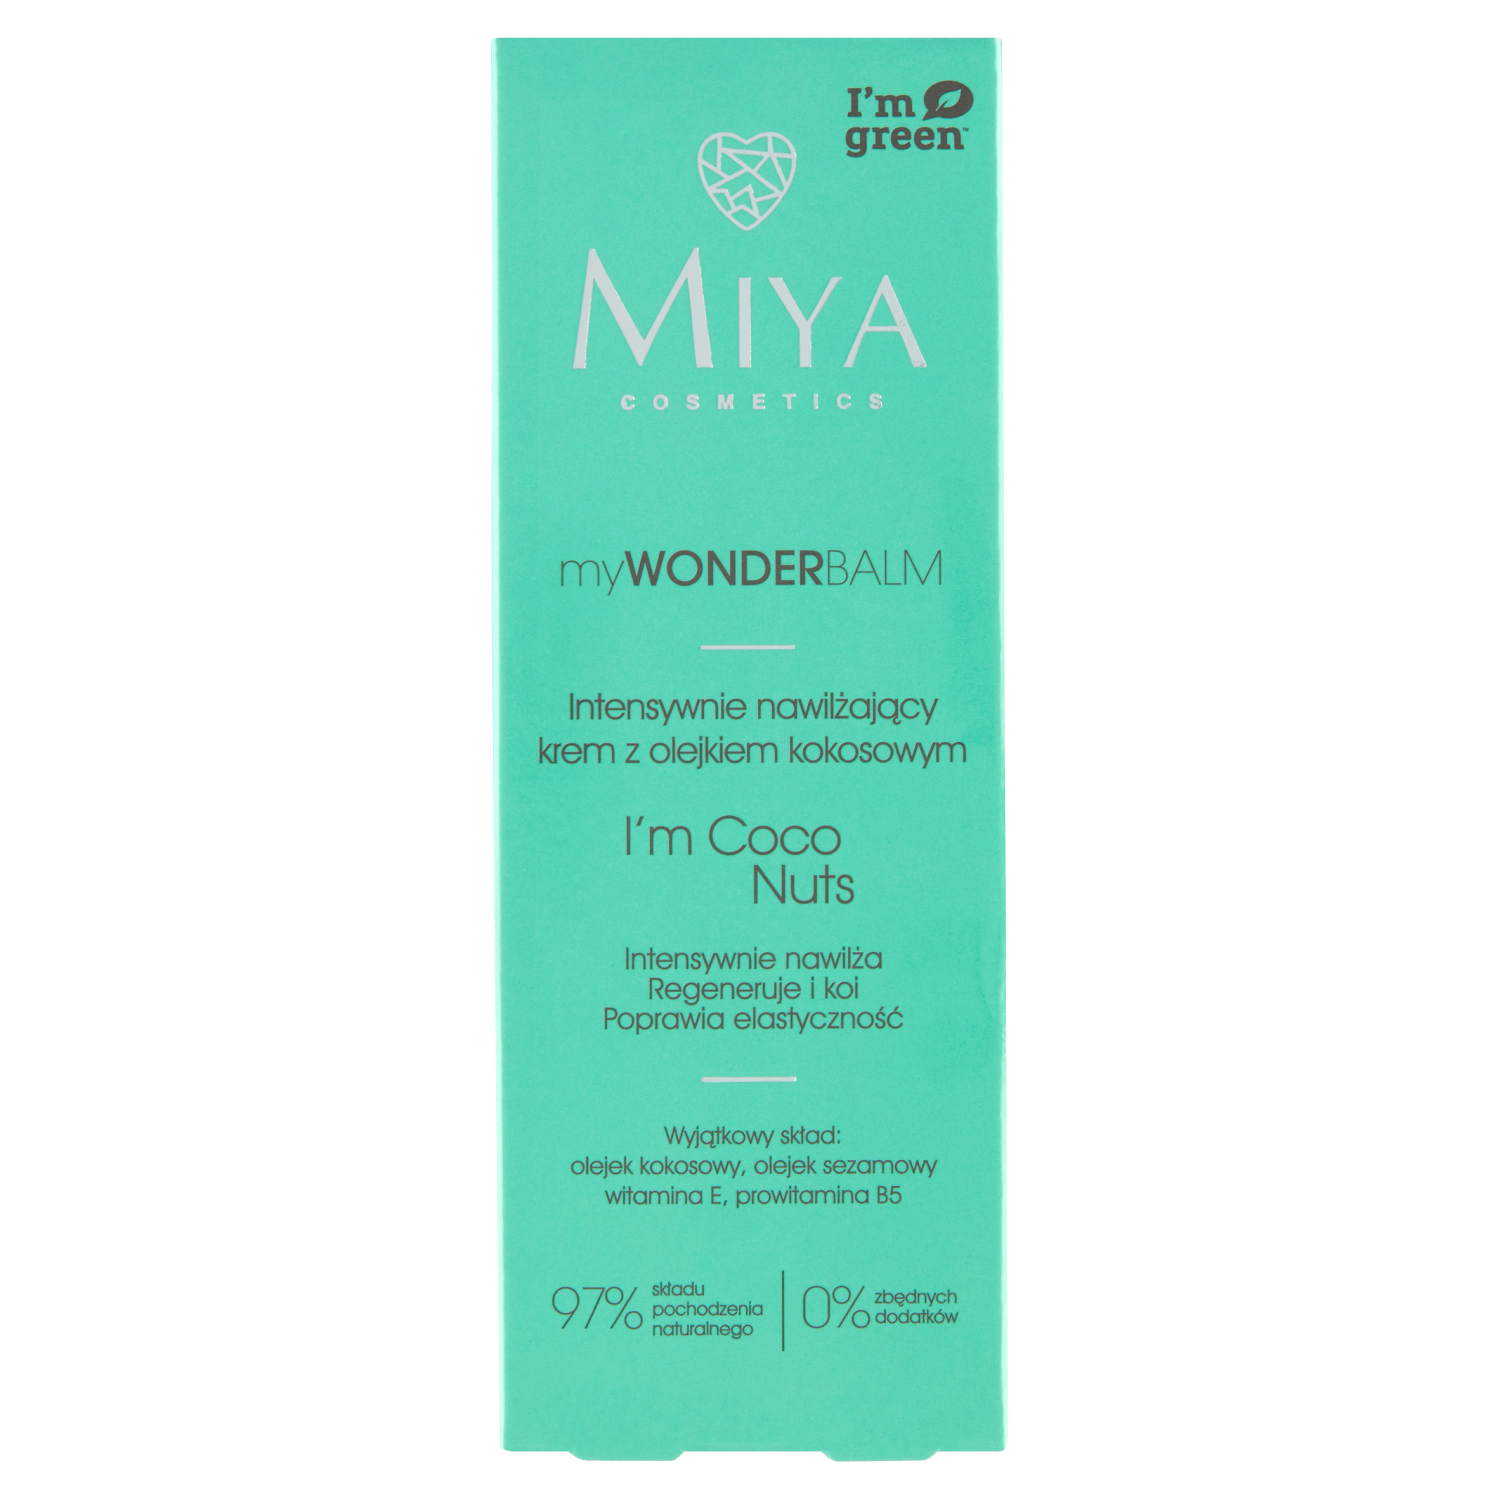 Miya Cosmetics MyWonderBalm